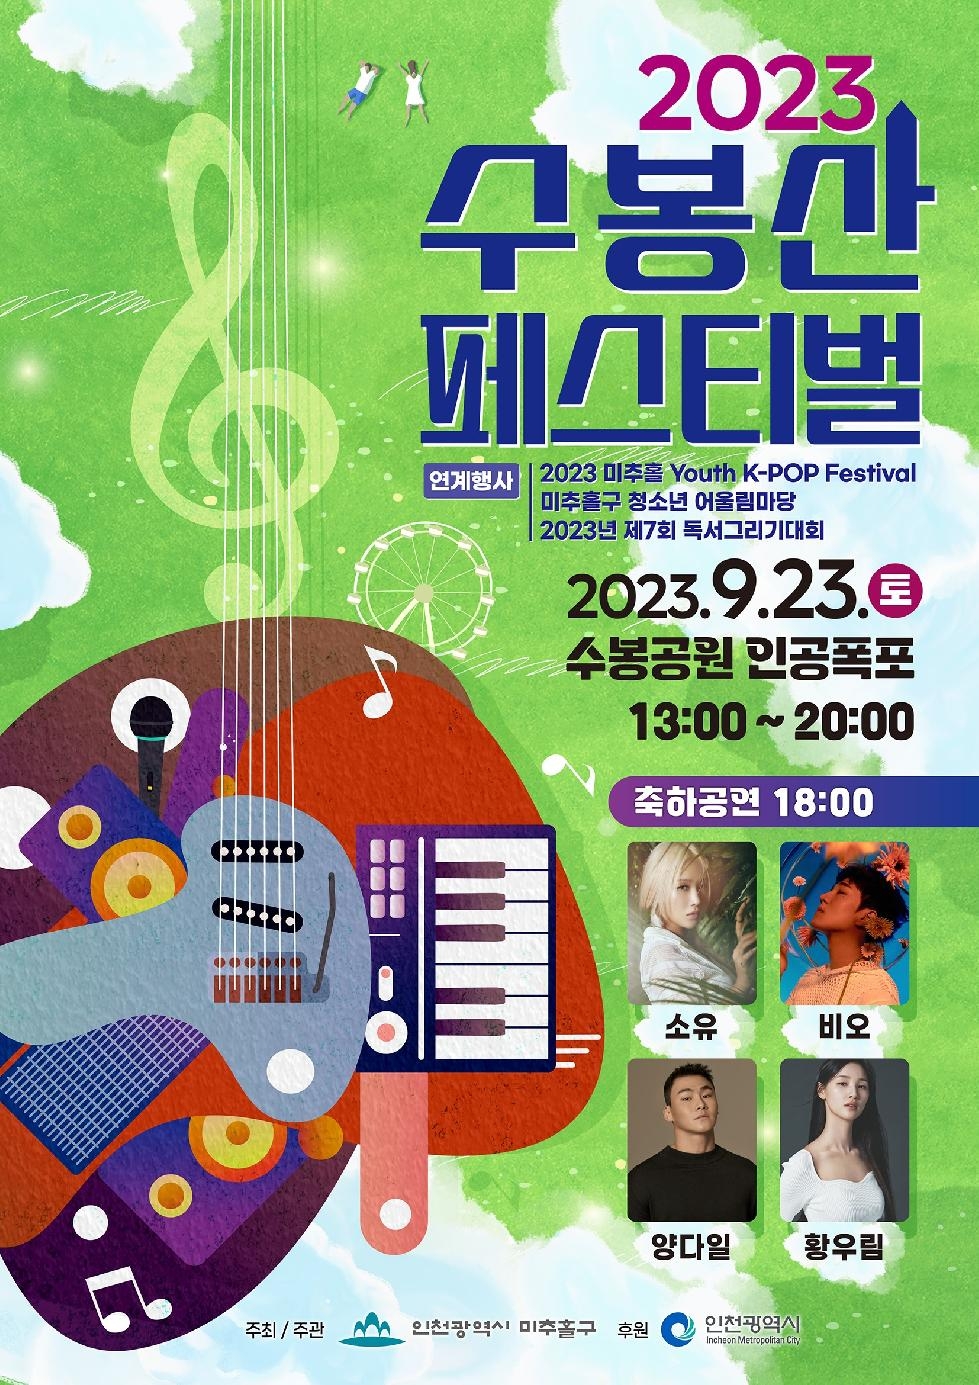 인천 미추홀구, 오는 23일 ‘제3회 수봉산 페스티벌’ 개최